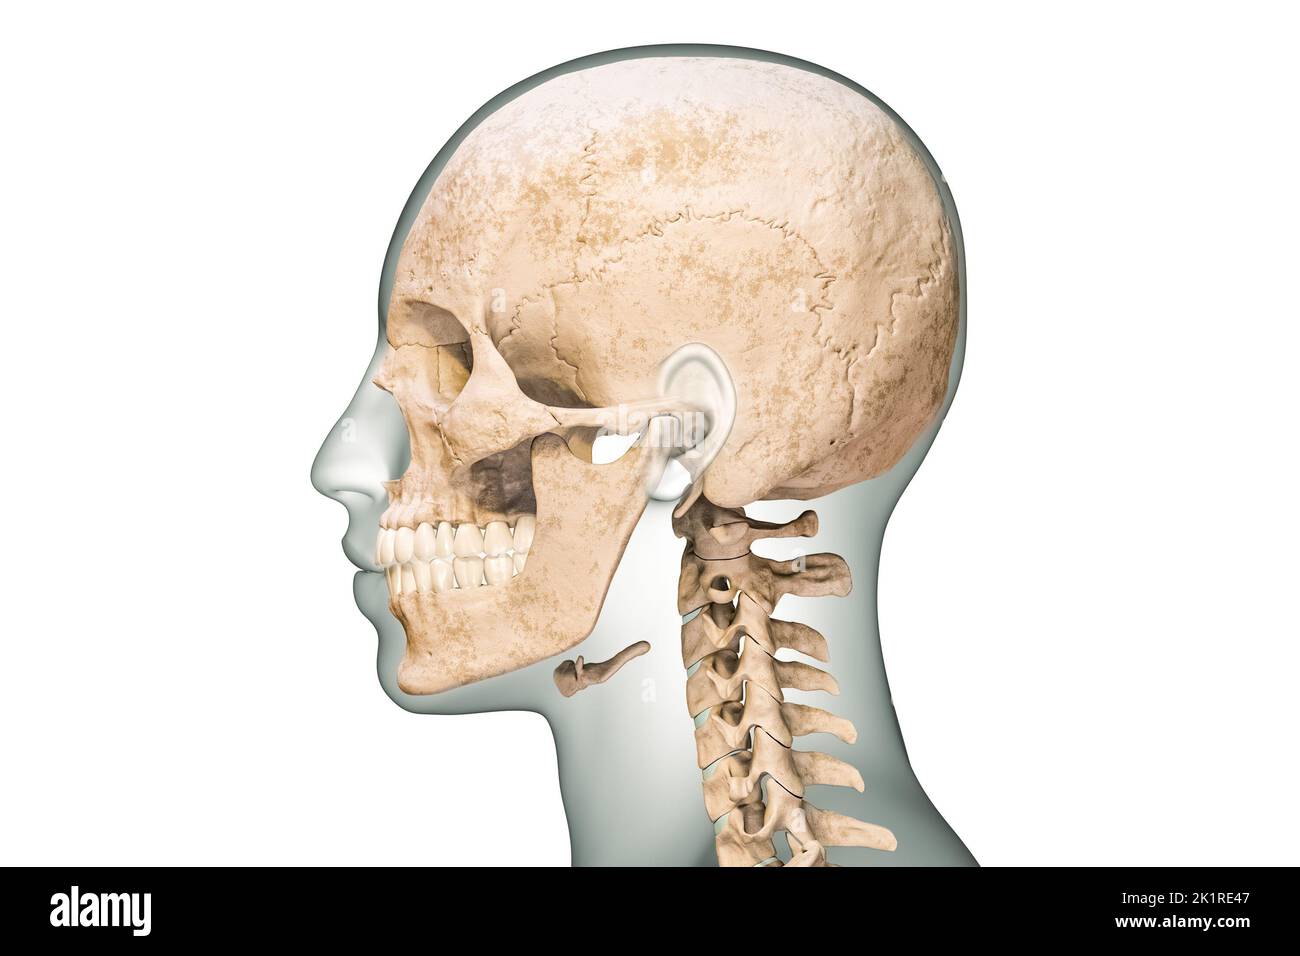 Vue latérale ou en profil des os du crâne humain avec vertèbres cervicales et contours du corps 3D illustration de rendu isolée sur fond blanc. Anatomie Banque D'Images